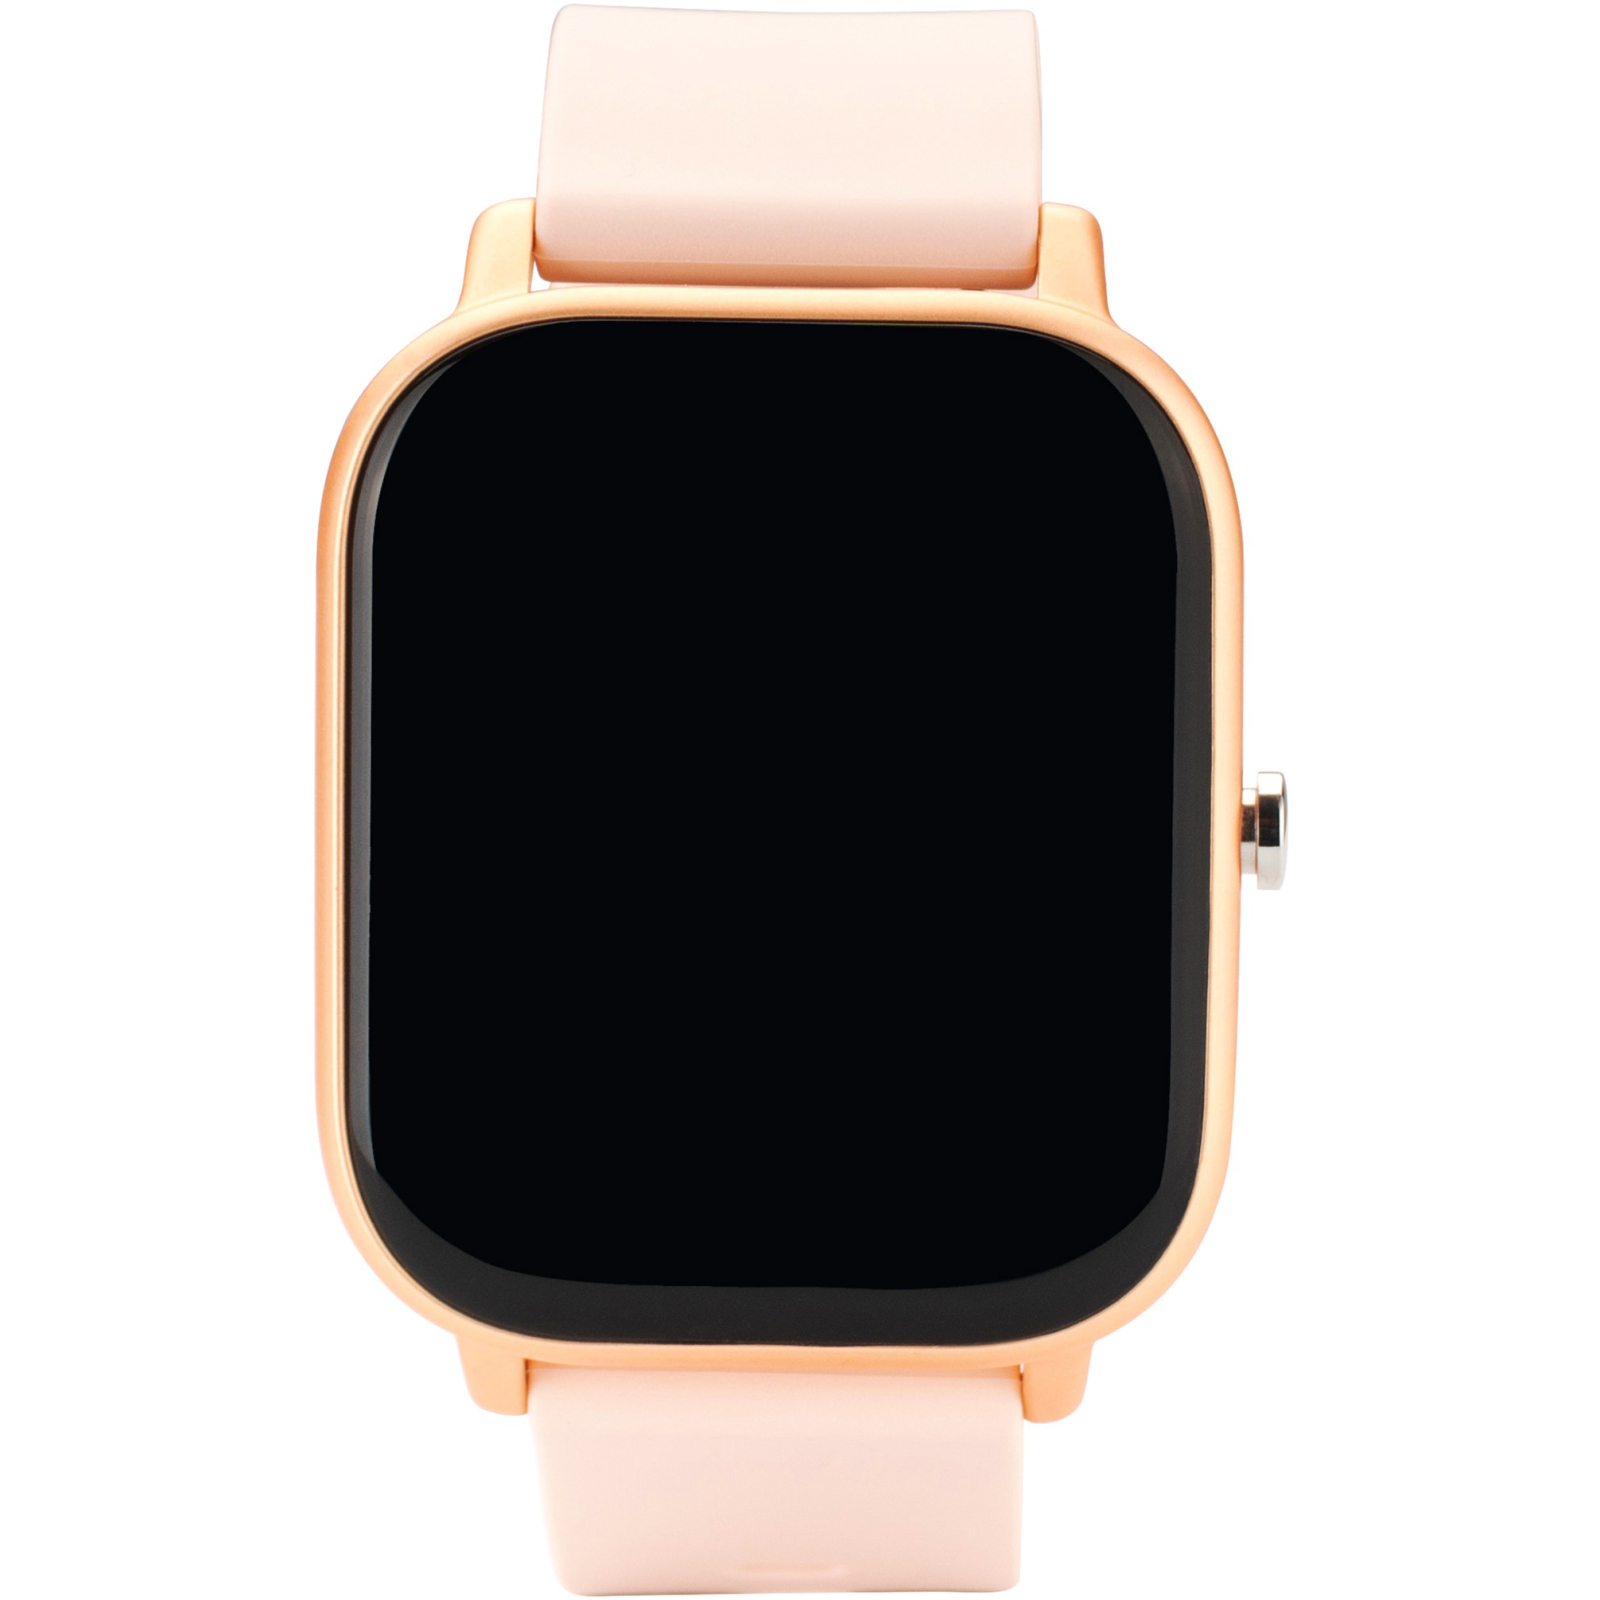 Смарт-часы Globex Smart Watch Me (Gold Rose) изображение 2